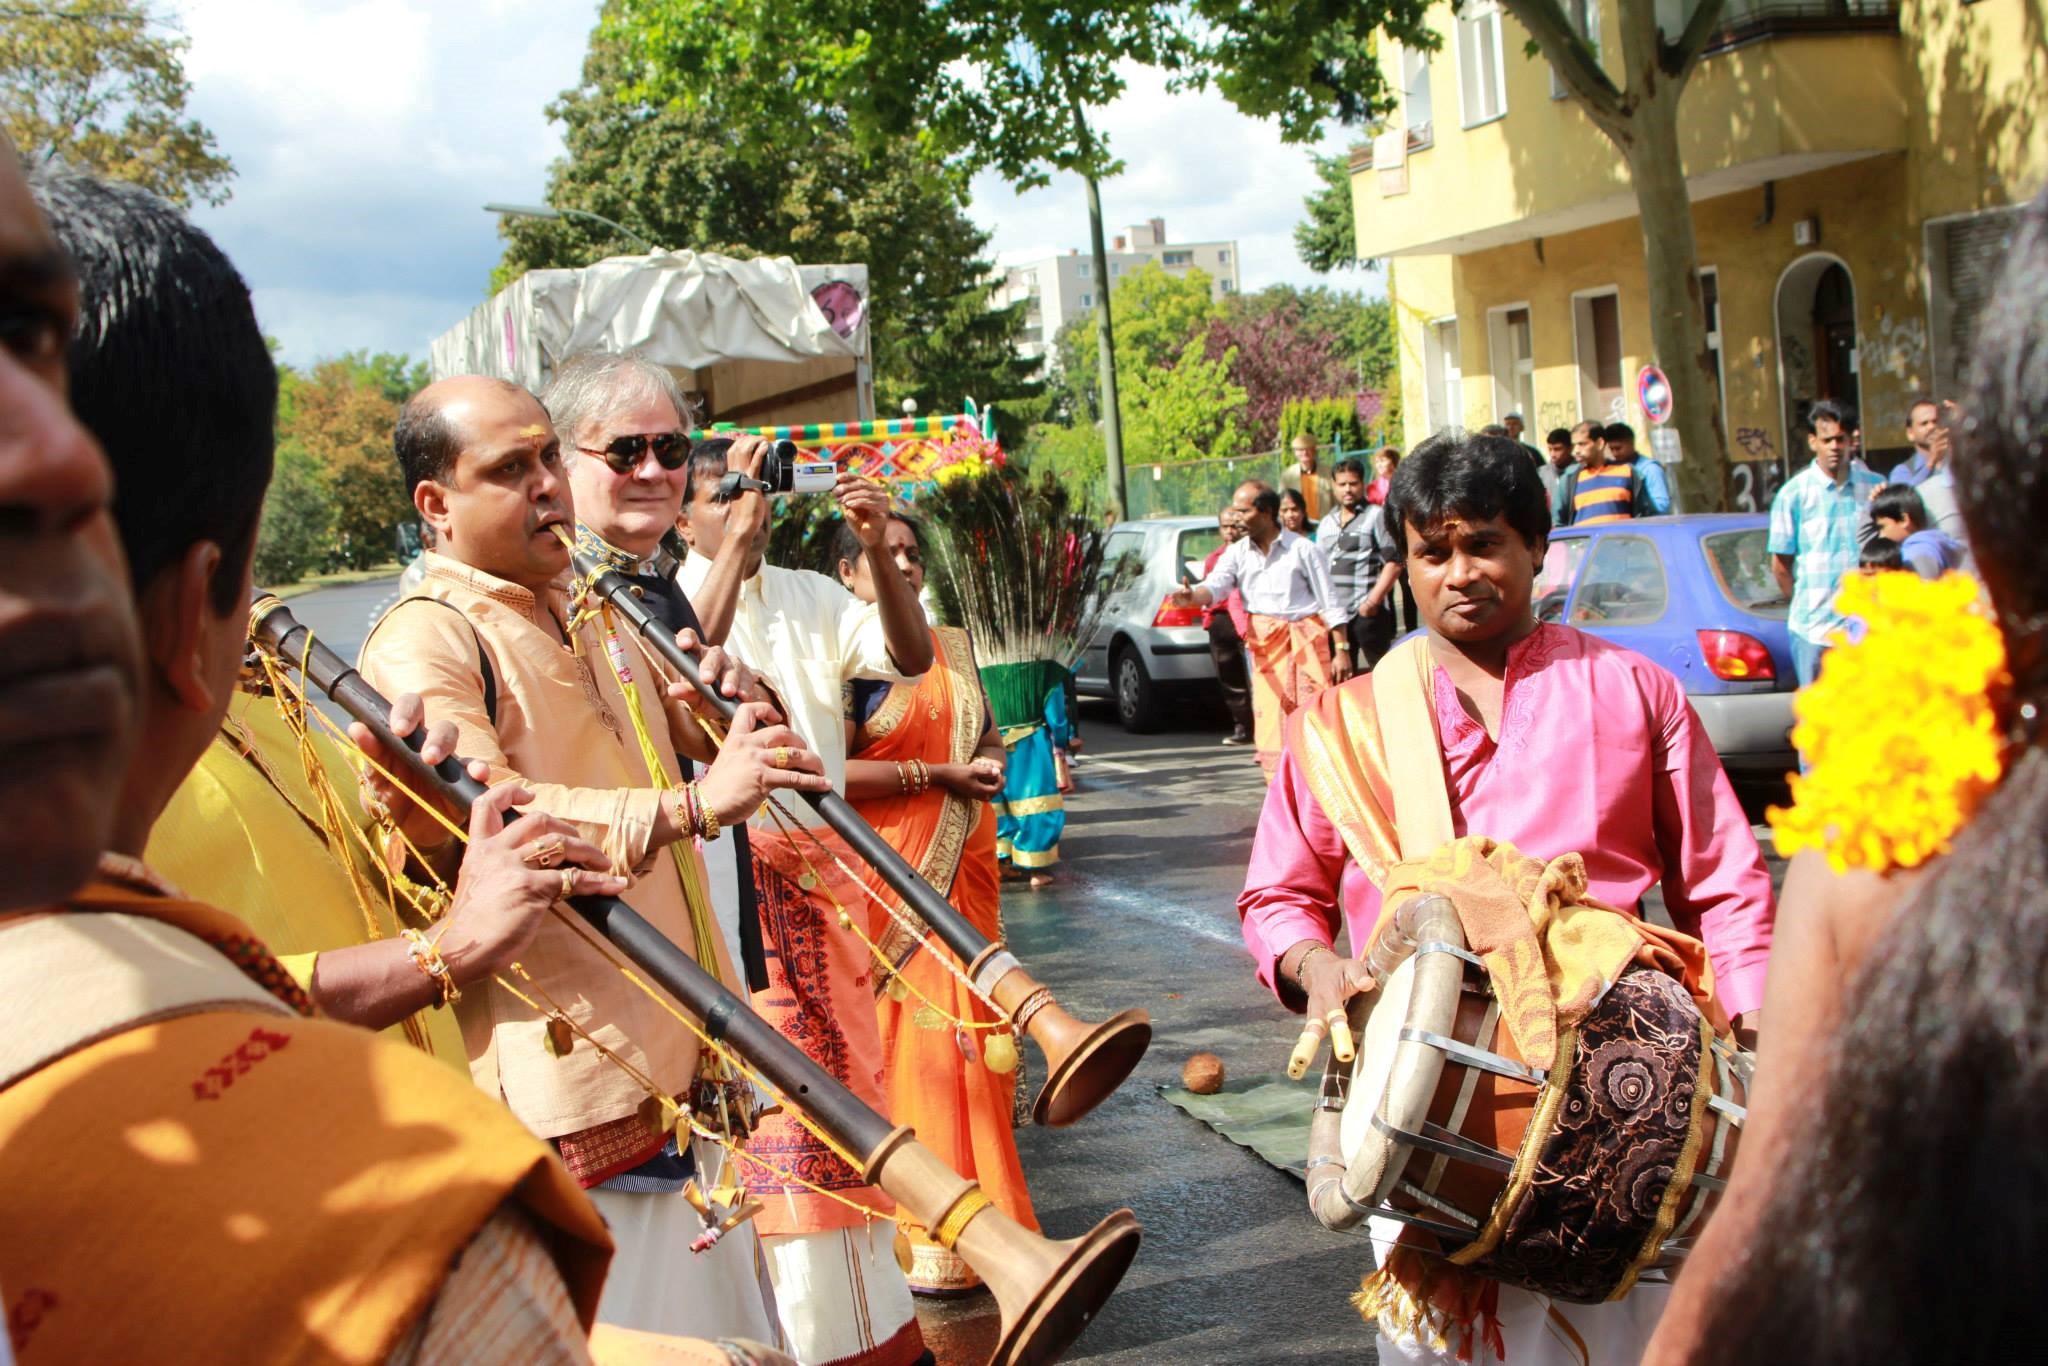 Musizierende in traditionellen Gewändern mit ihren Instrumenten.